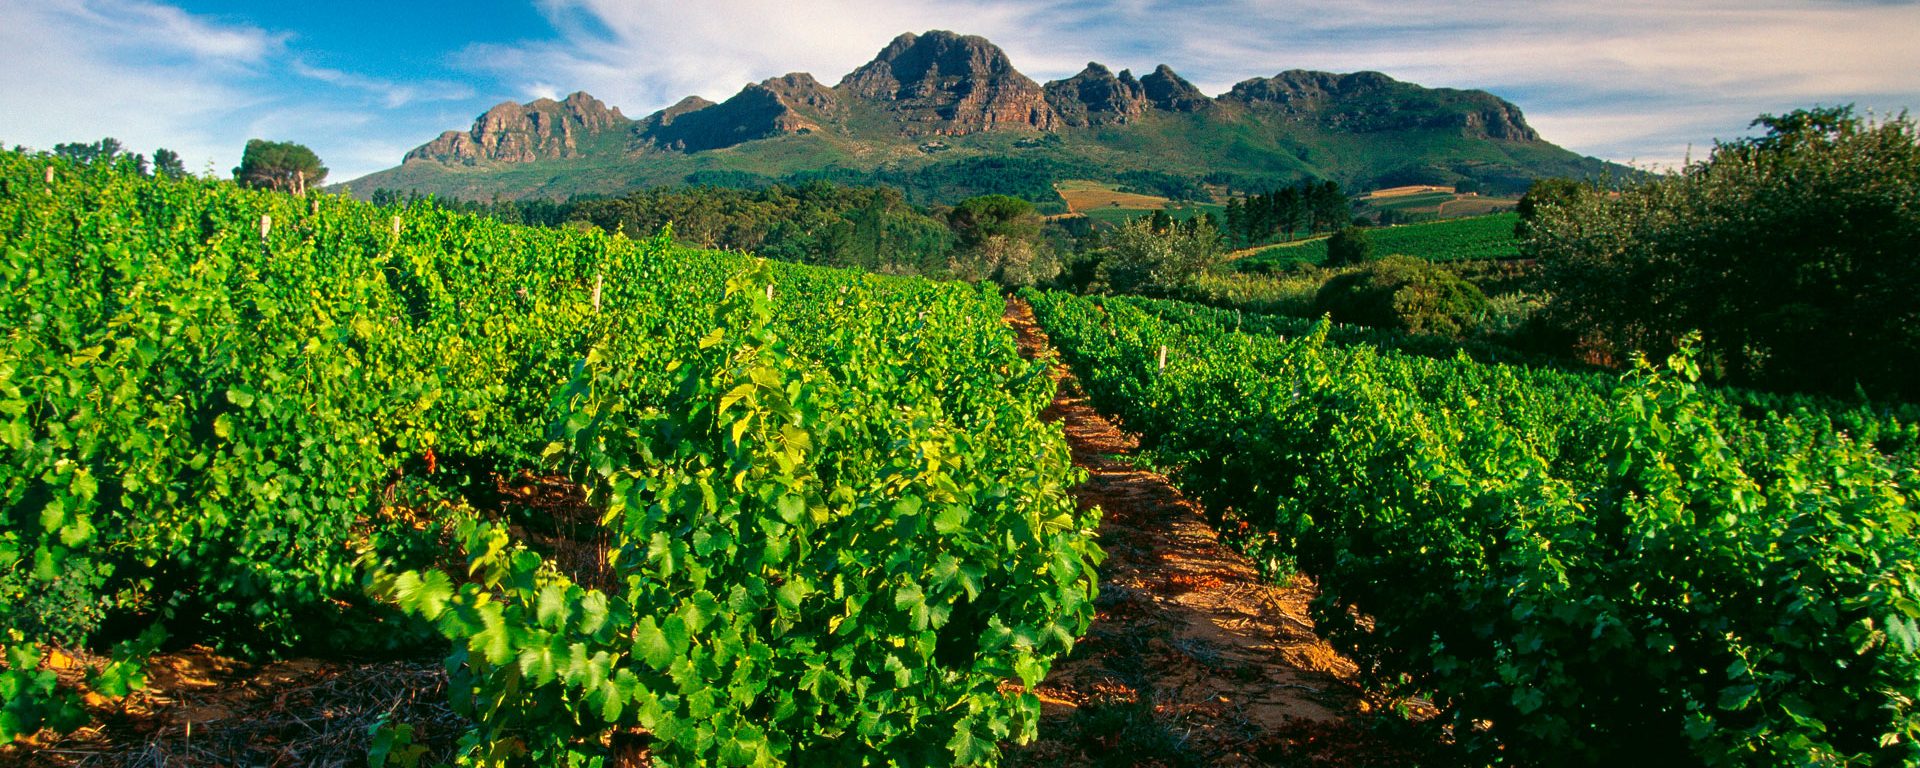 Vineyard near Stellenbosch, South Africa